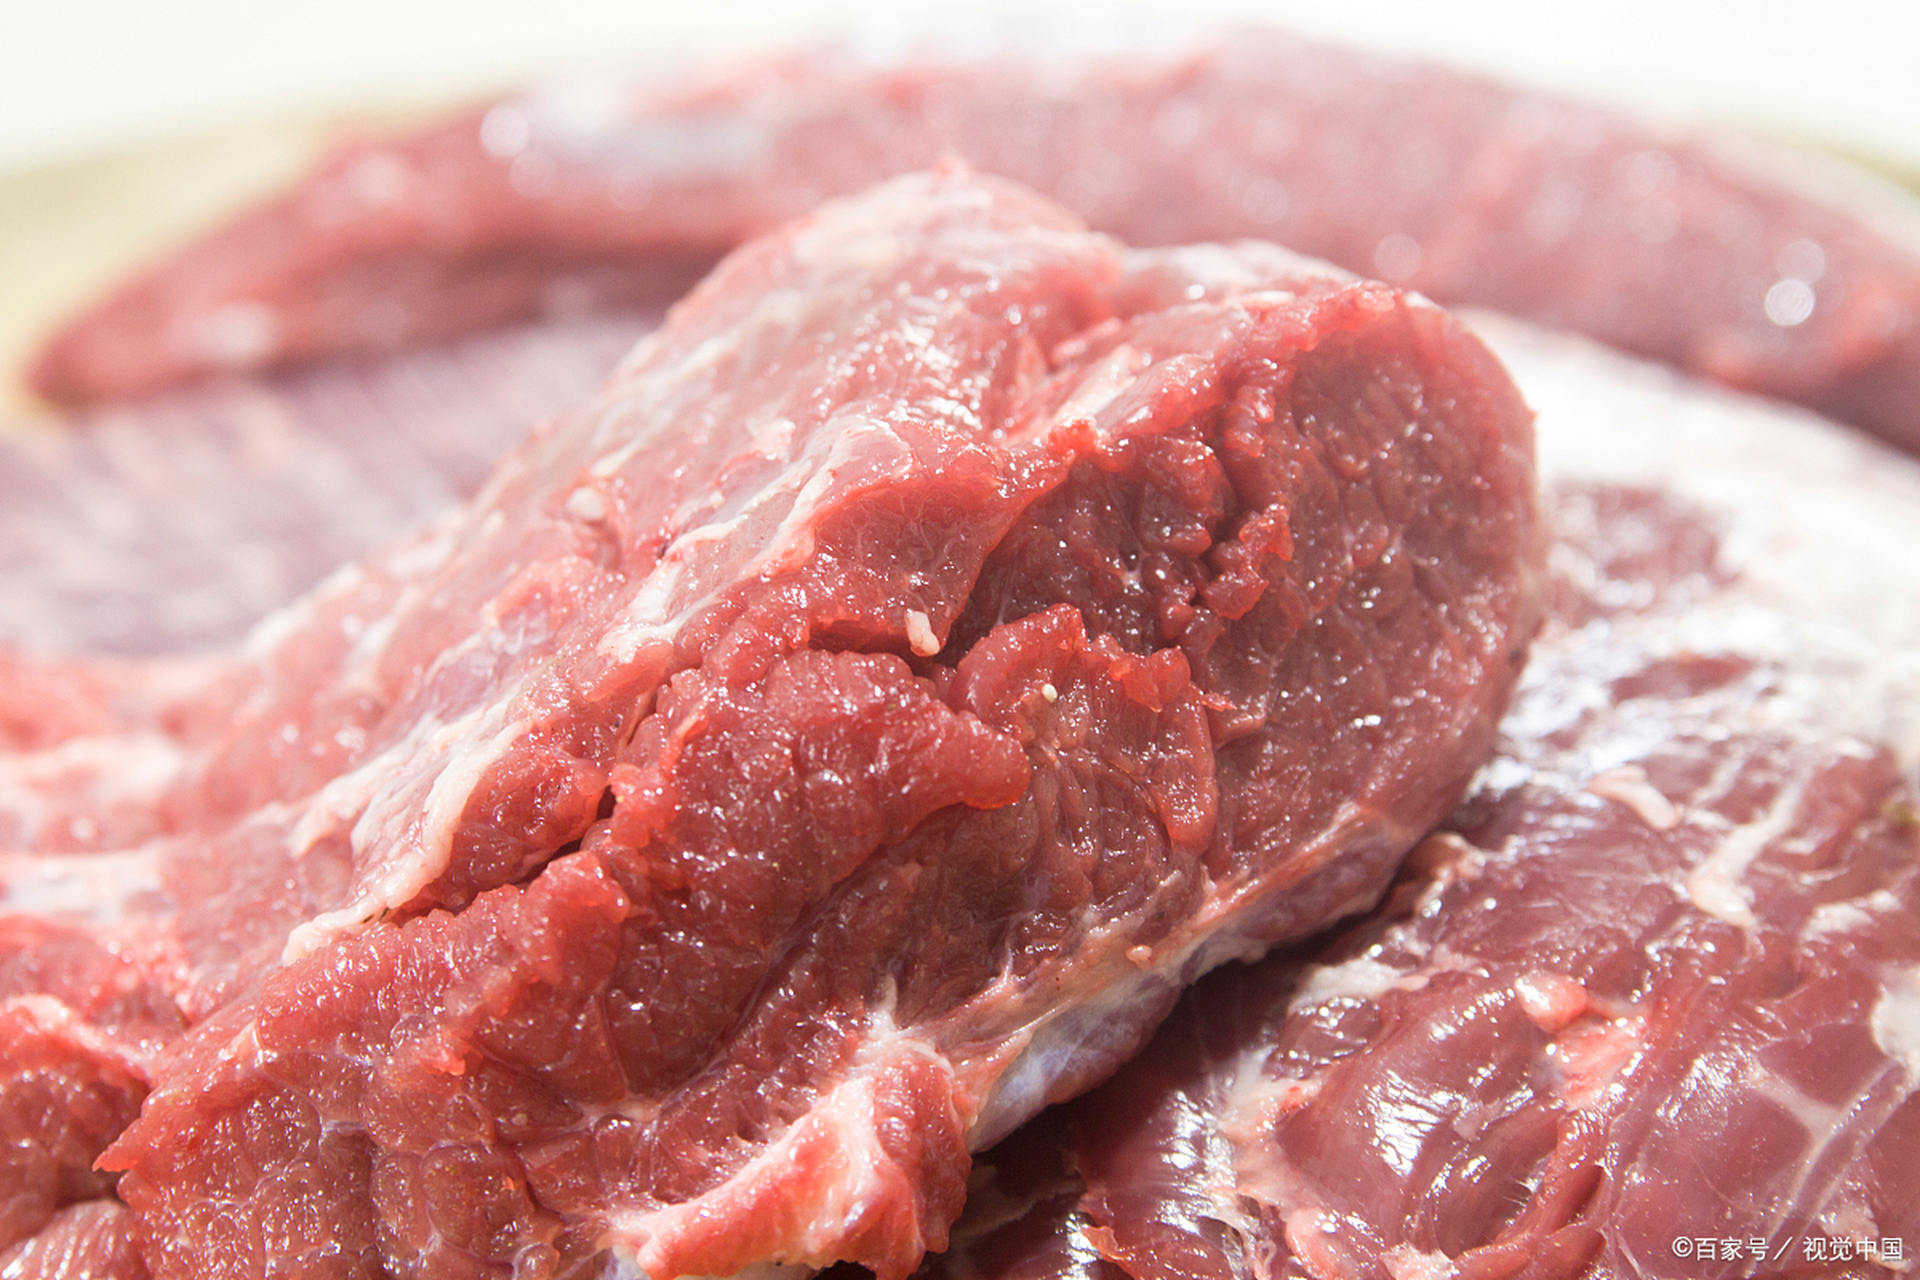 用猪肉冒充牛肉,2400多斤假牛肉被缴获  近日,厦门市鹭江市场监管所